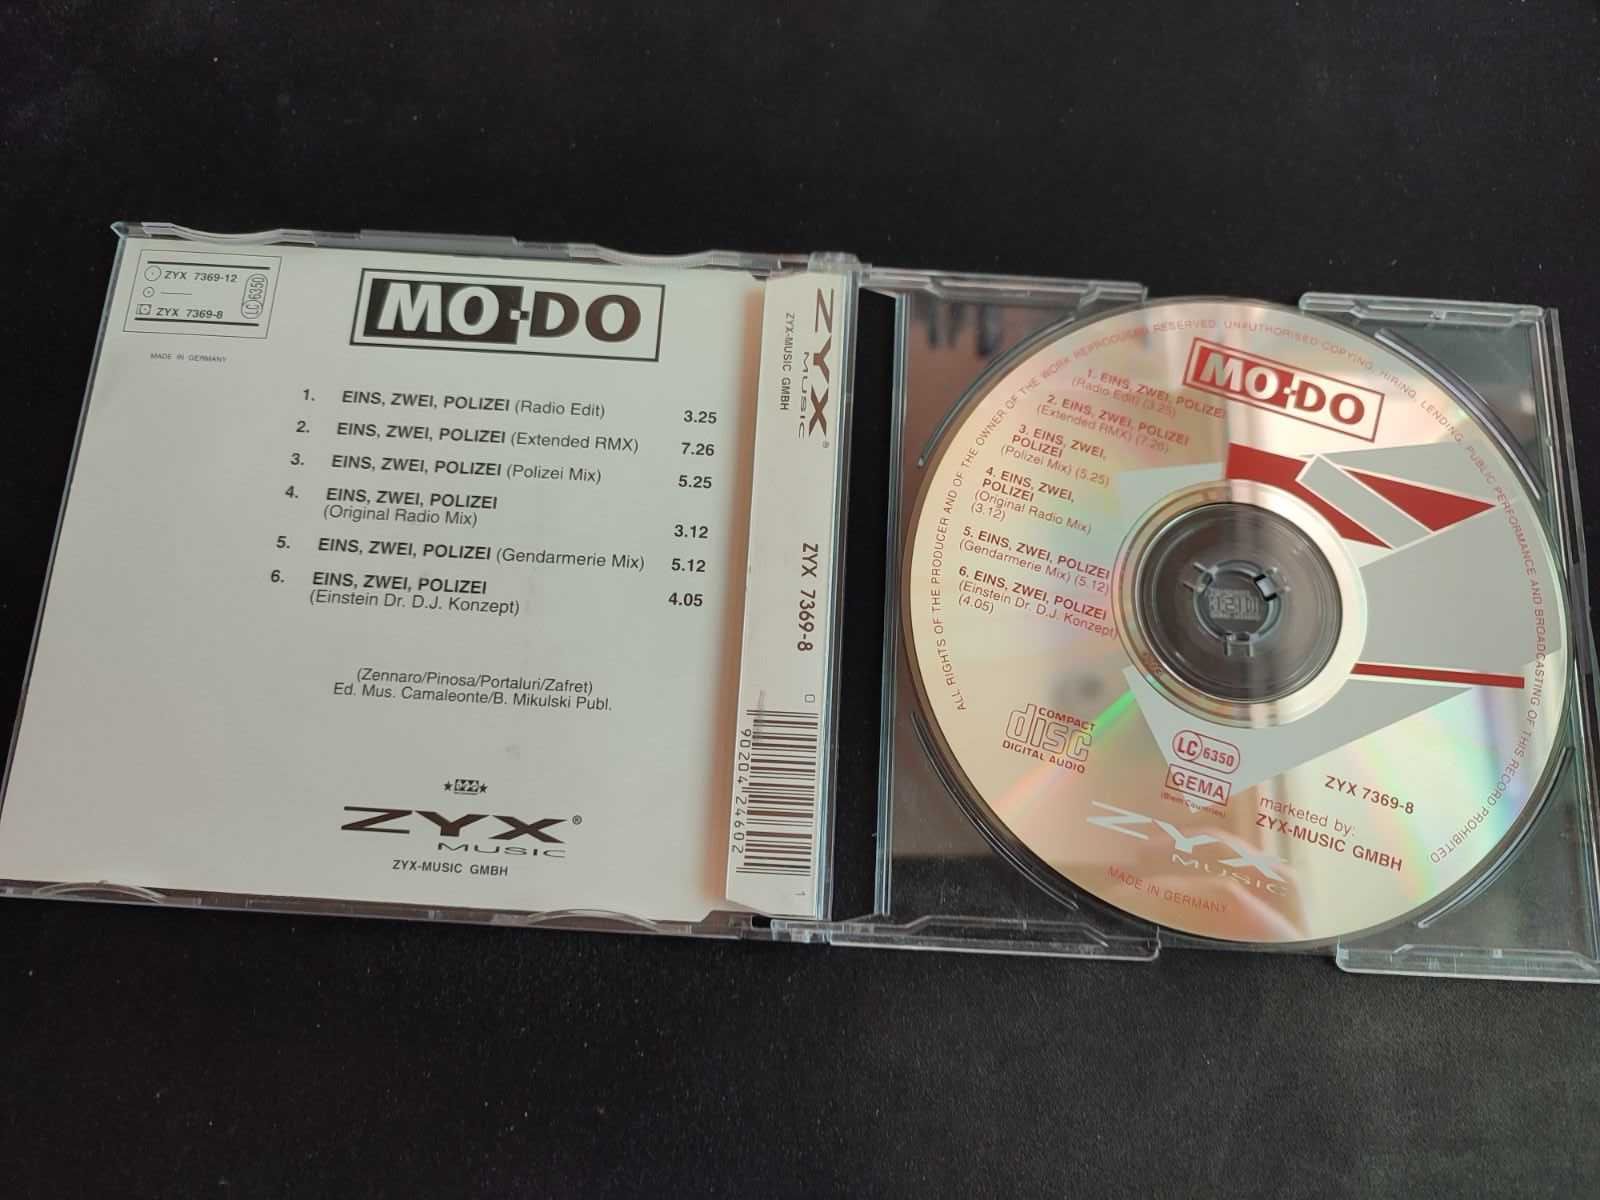 Музыкальный CD Mo-Do альбом Eins, Zwei, Polizei Remix 1994 год